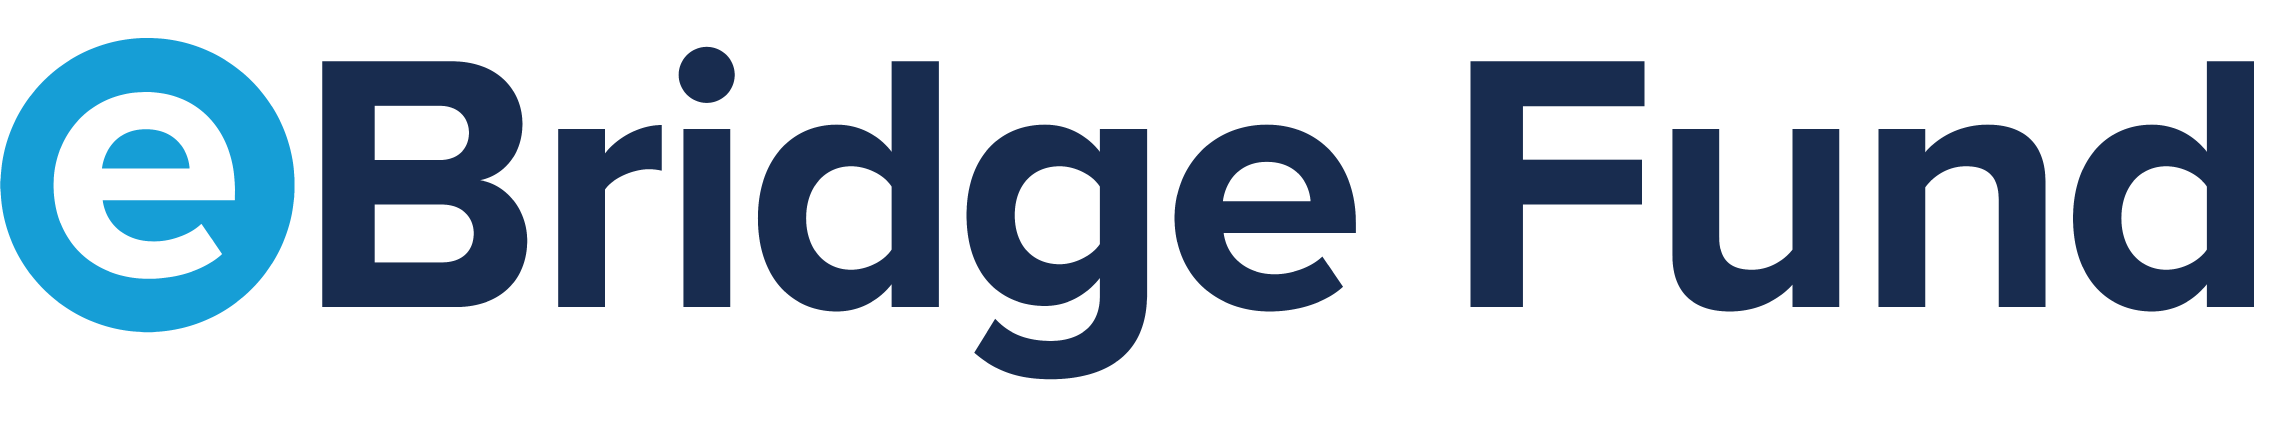 eBridge Fund Logo